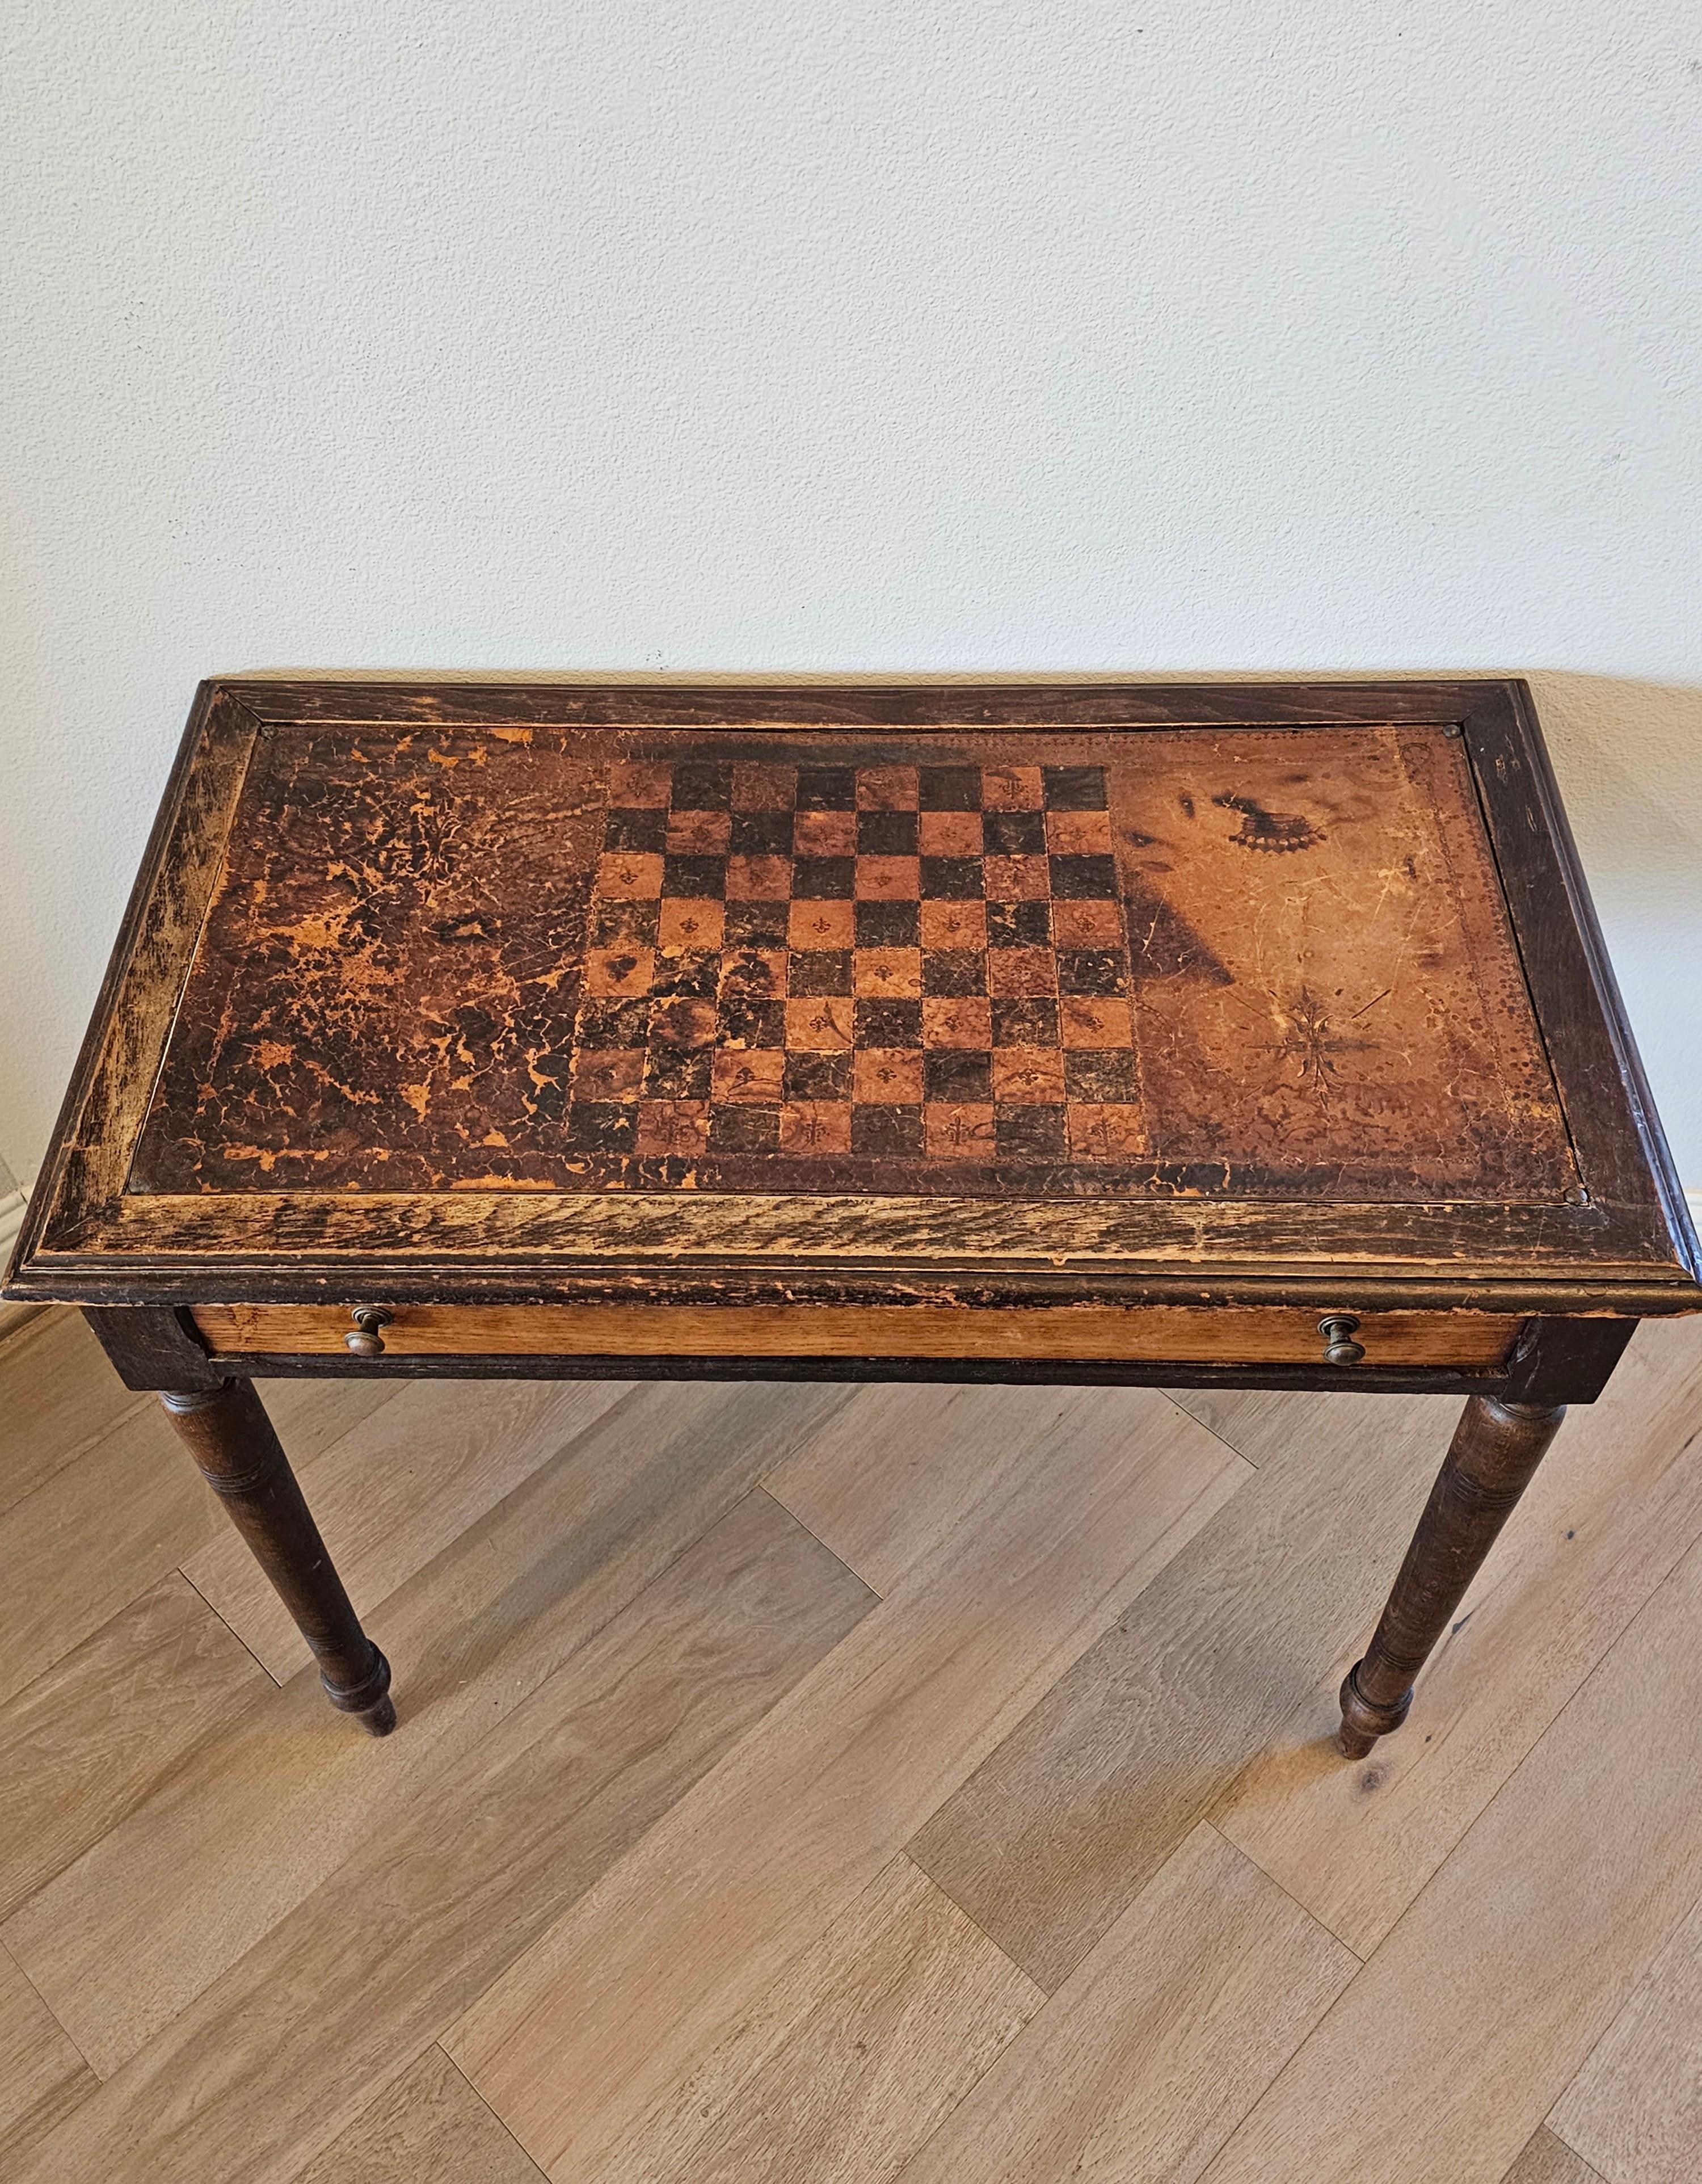 Ajoutez un caractère et un charme européens authentiques avec cette table à écrire / table à jeux antique distinctive avec une patine rustique chaude et fortement vieillie. 

Né en Europe continentale au XIXe siècle, ce meuble a été fabriqué à la